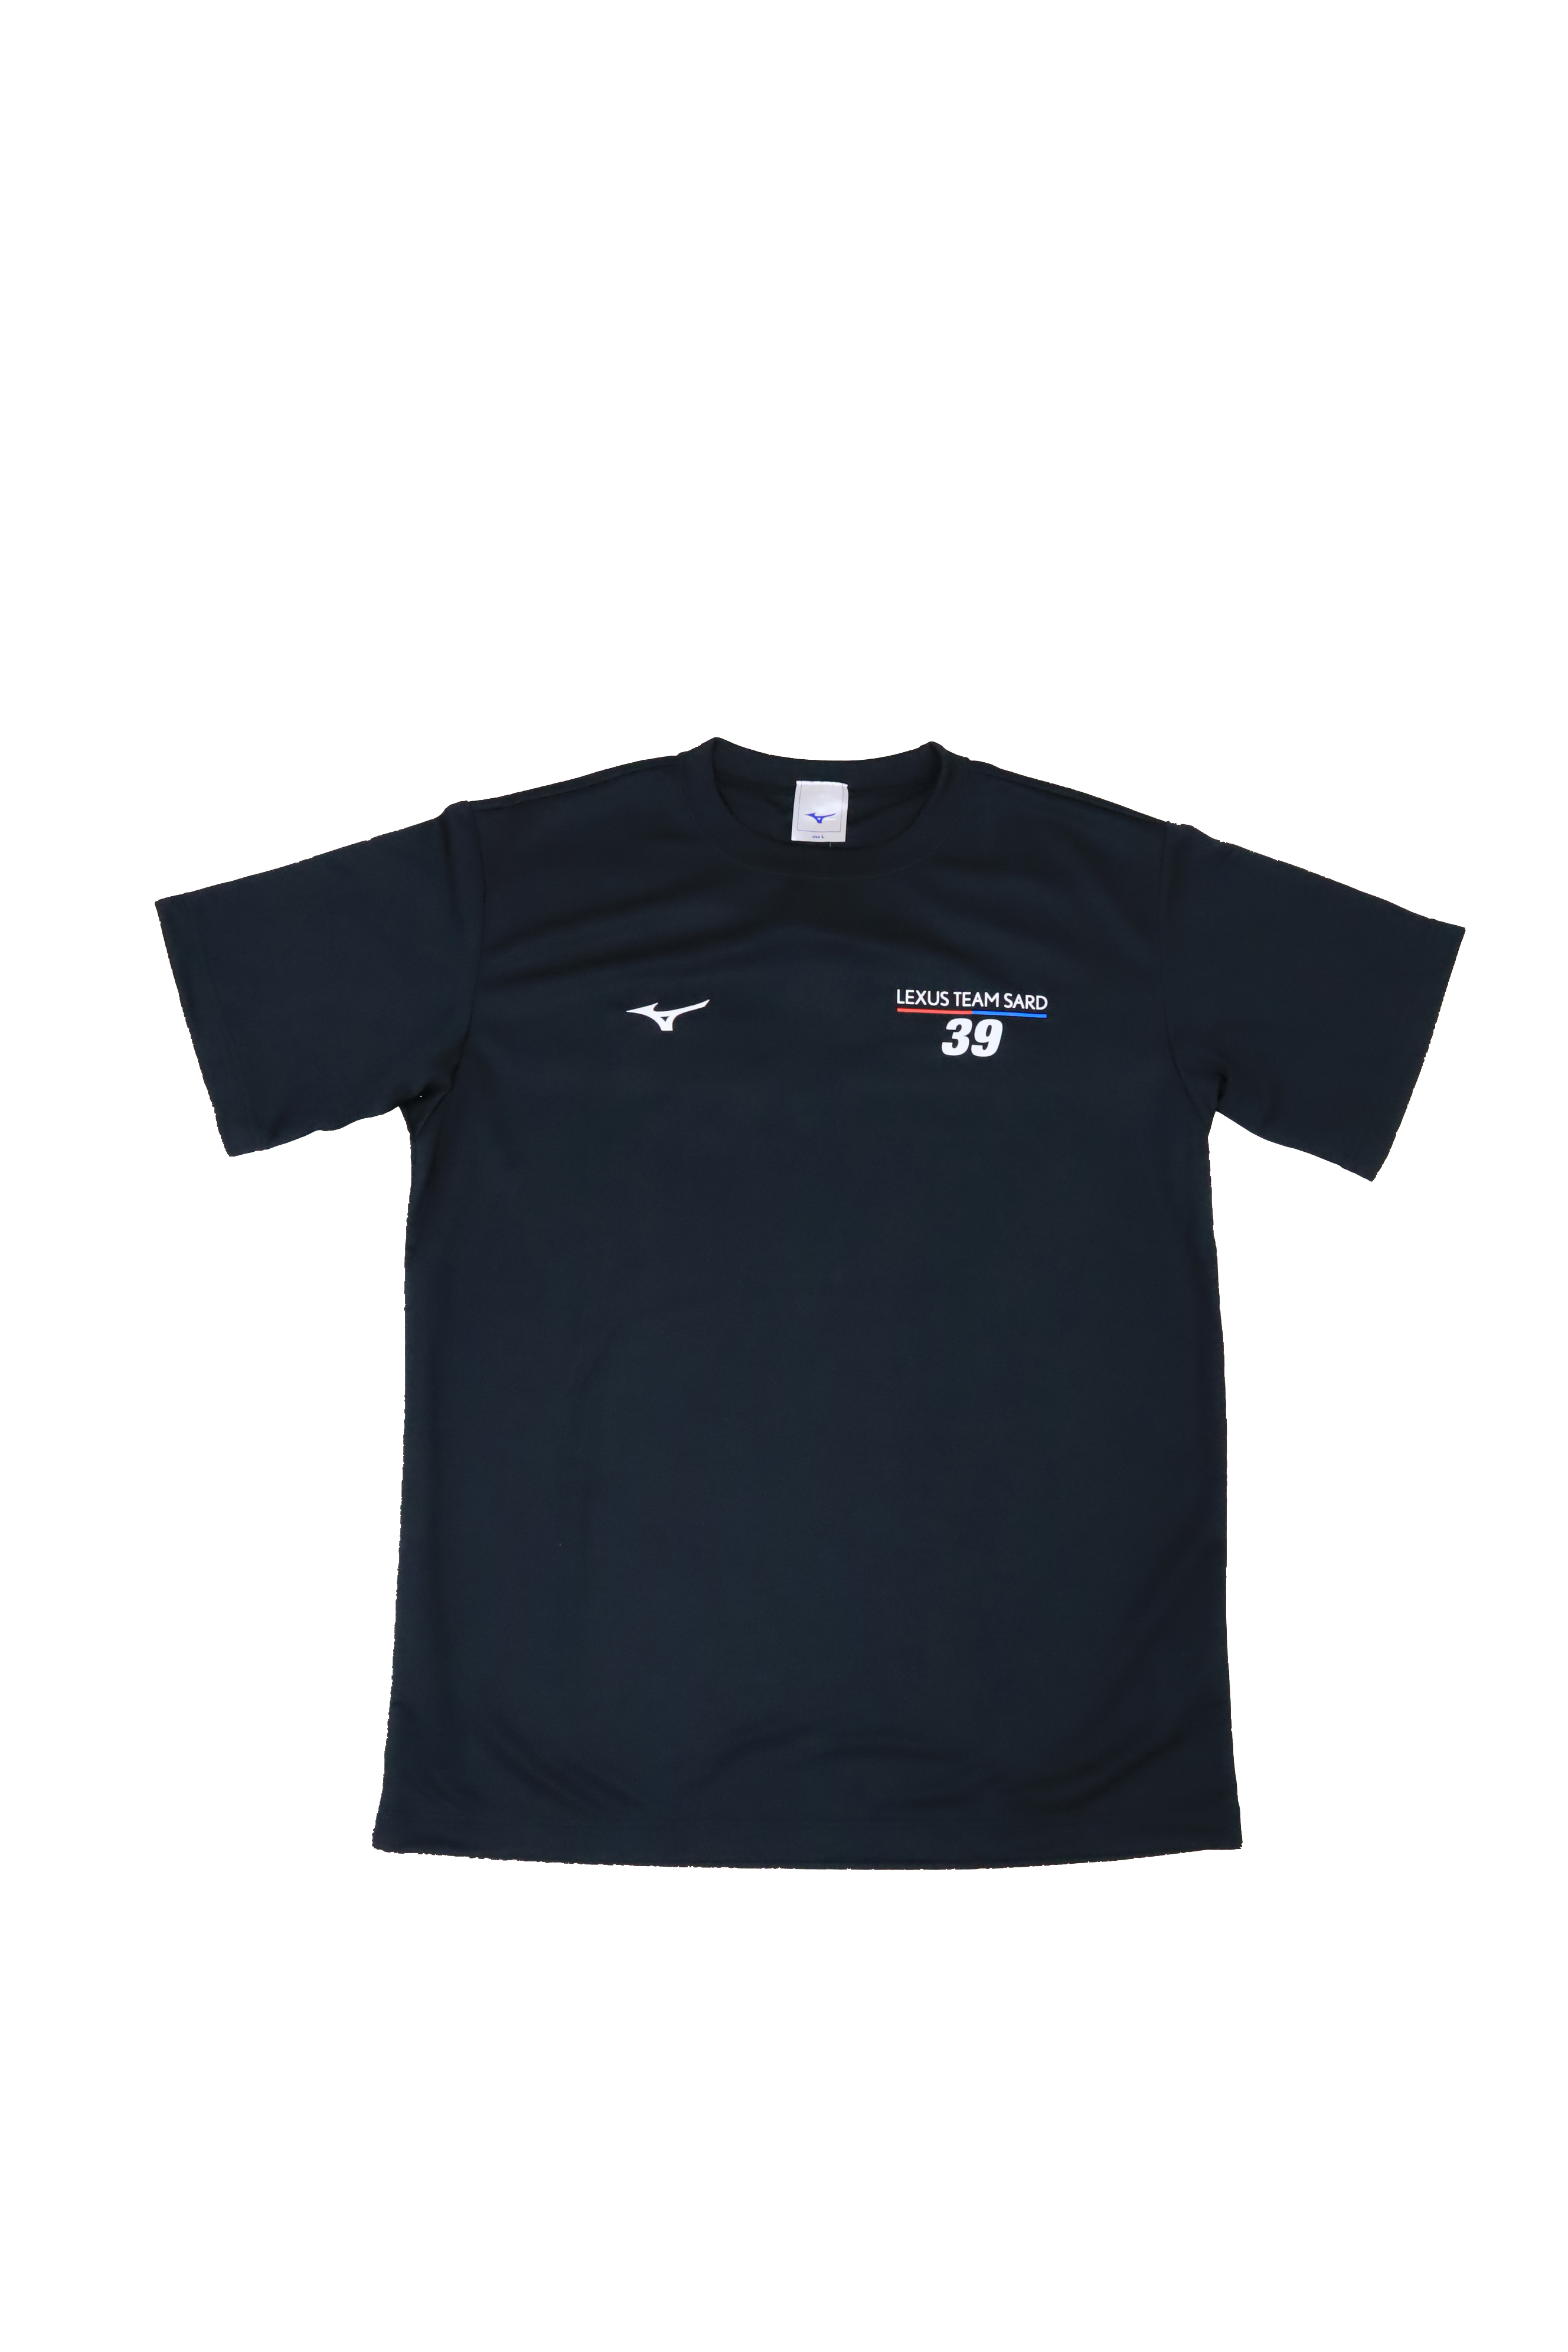 2019 LEXUS TEAM SARD　ドライTシャツ（ブラック）